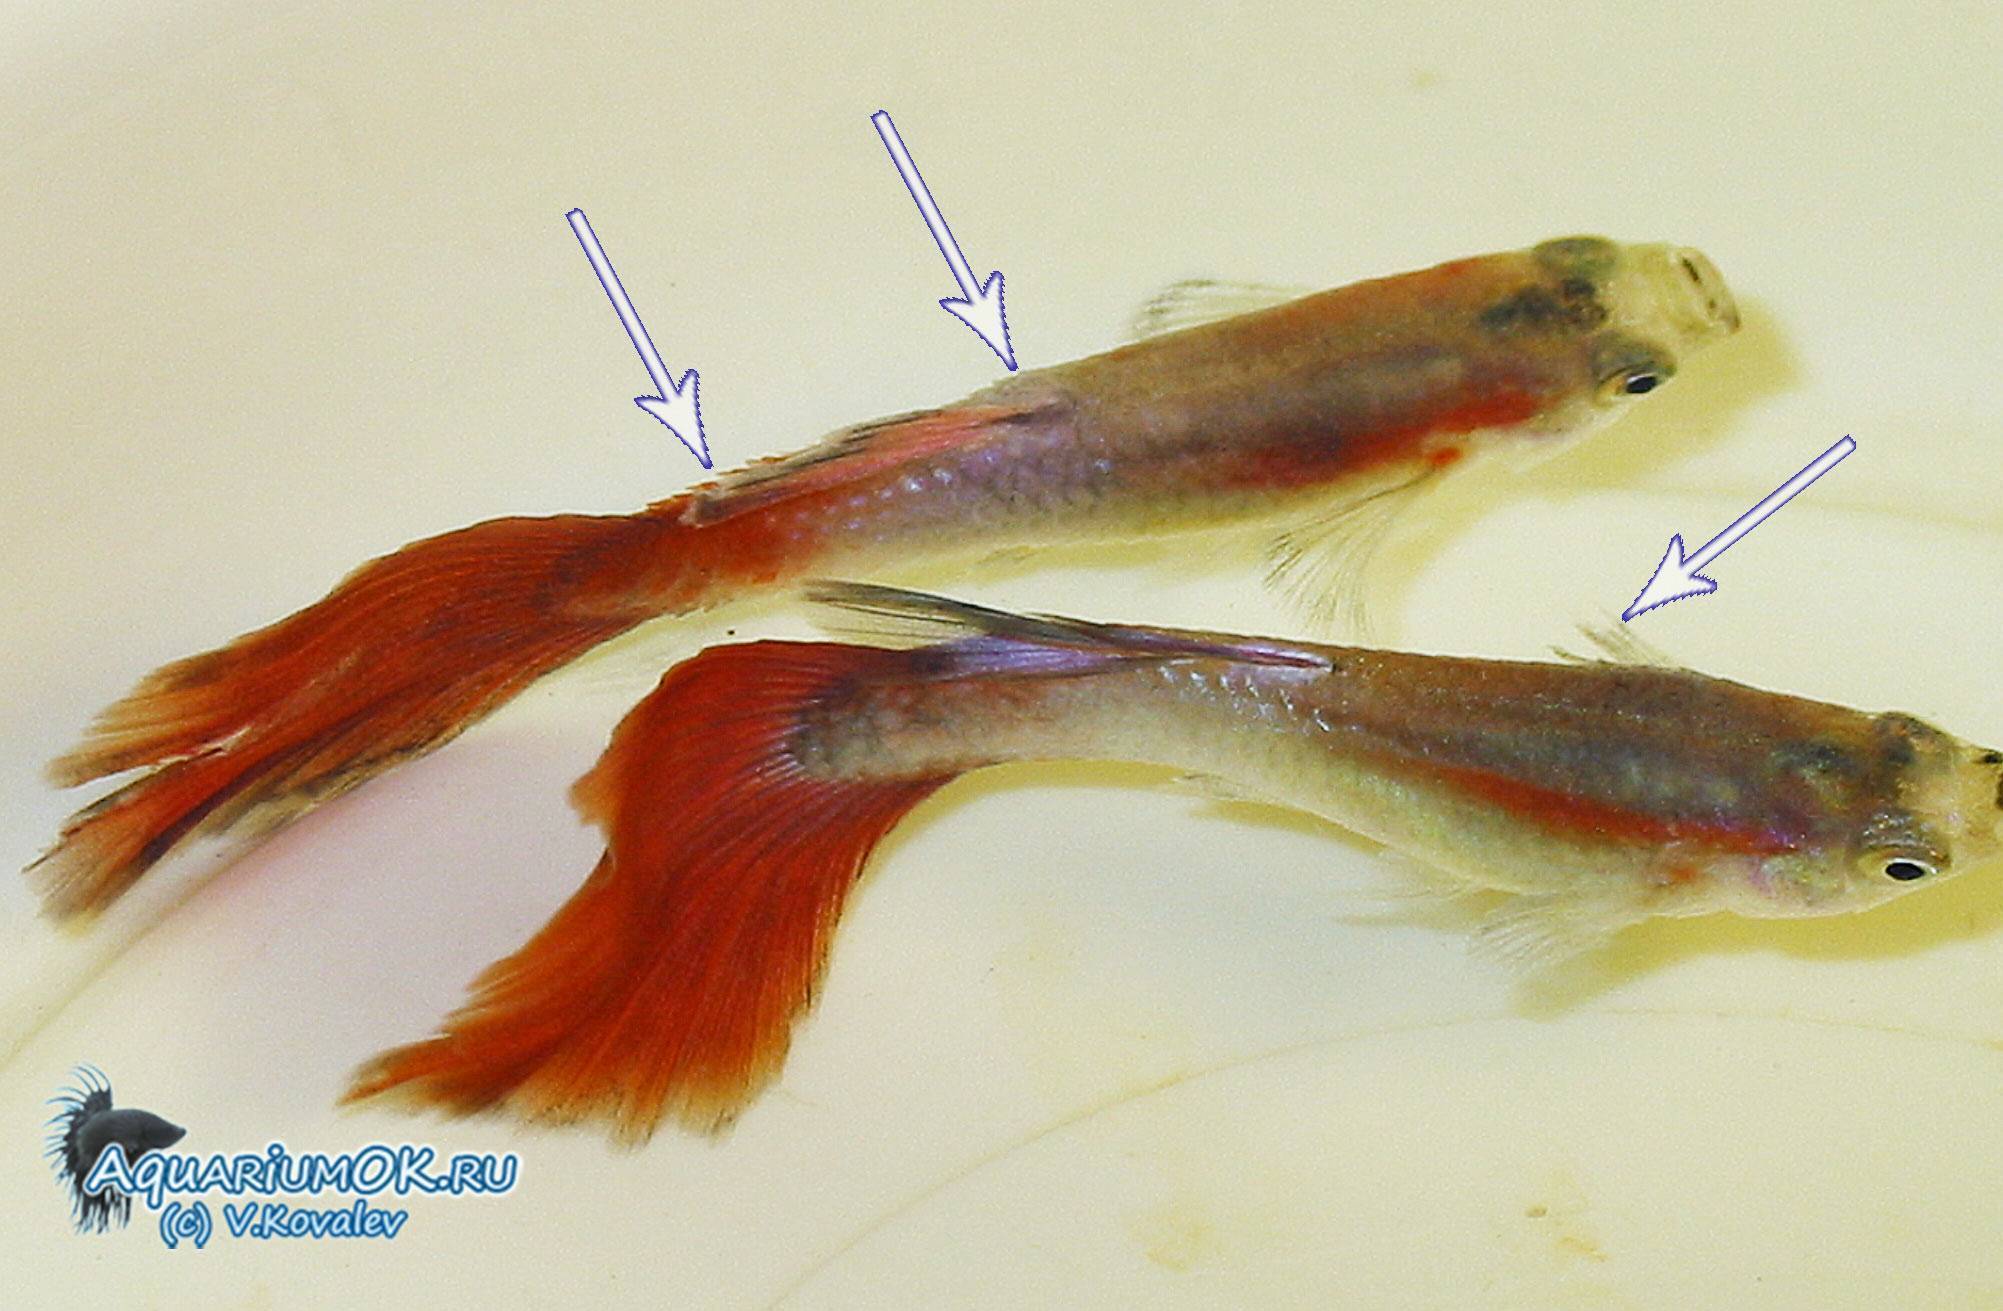 Болезни аквариумных рыб: лечение,описание,фото,симптомы,видео